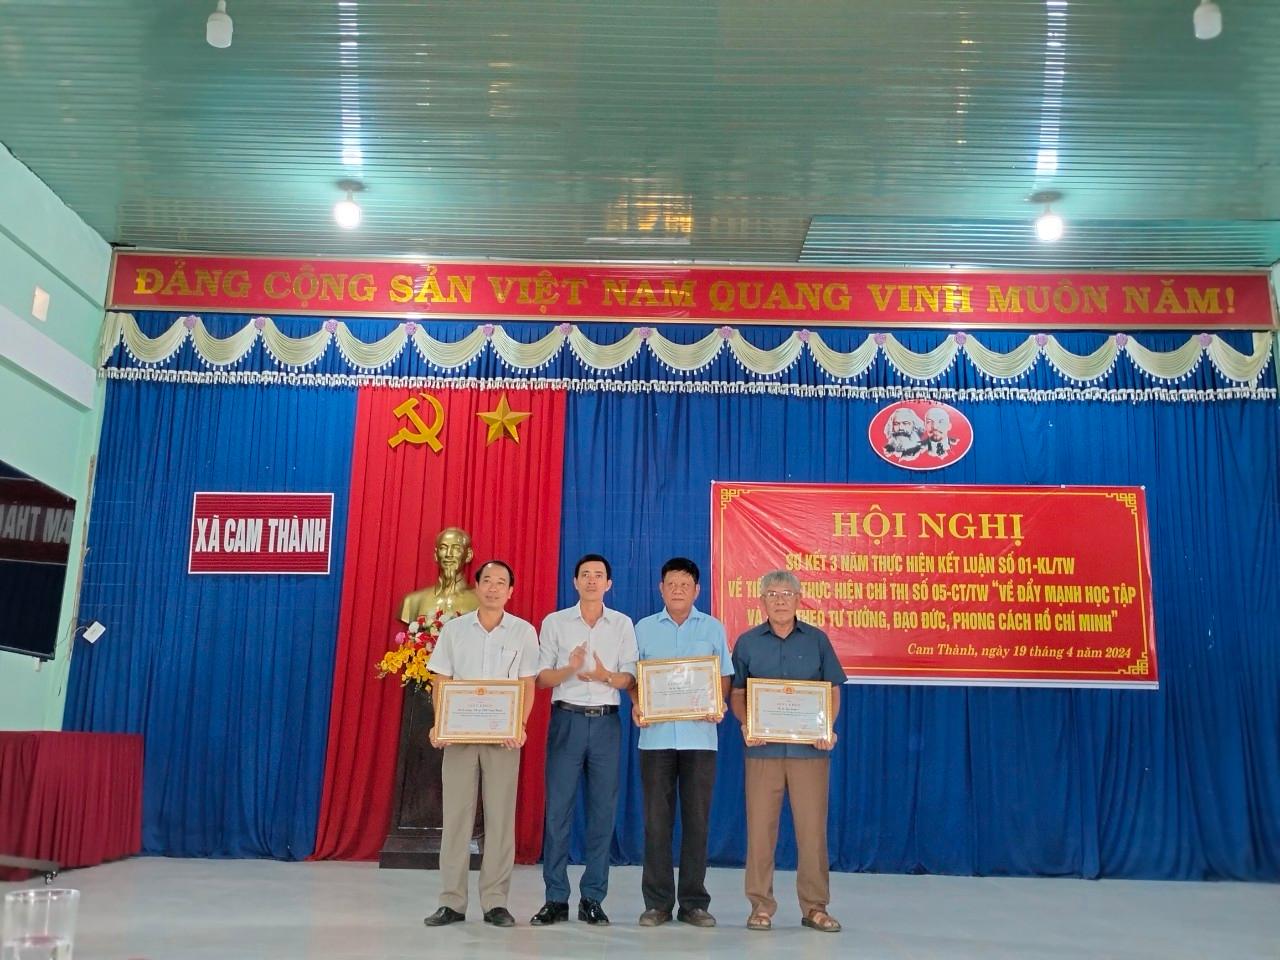 Đảng bộ xã Cam Thành sơ kết 3 năm thực hiện Kết luận số 01-KL/TW của Bộ Chính trị về “Đẩy mạnh học tập và làm theo tư tưởng, đạo đức, phong cách Hồ Chí Minh”